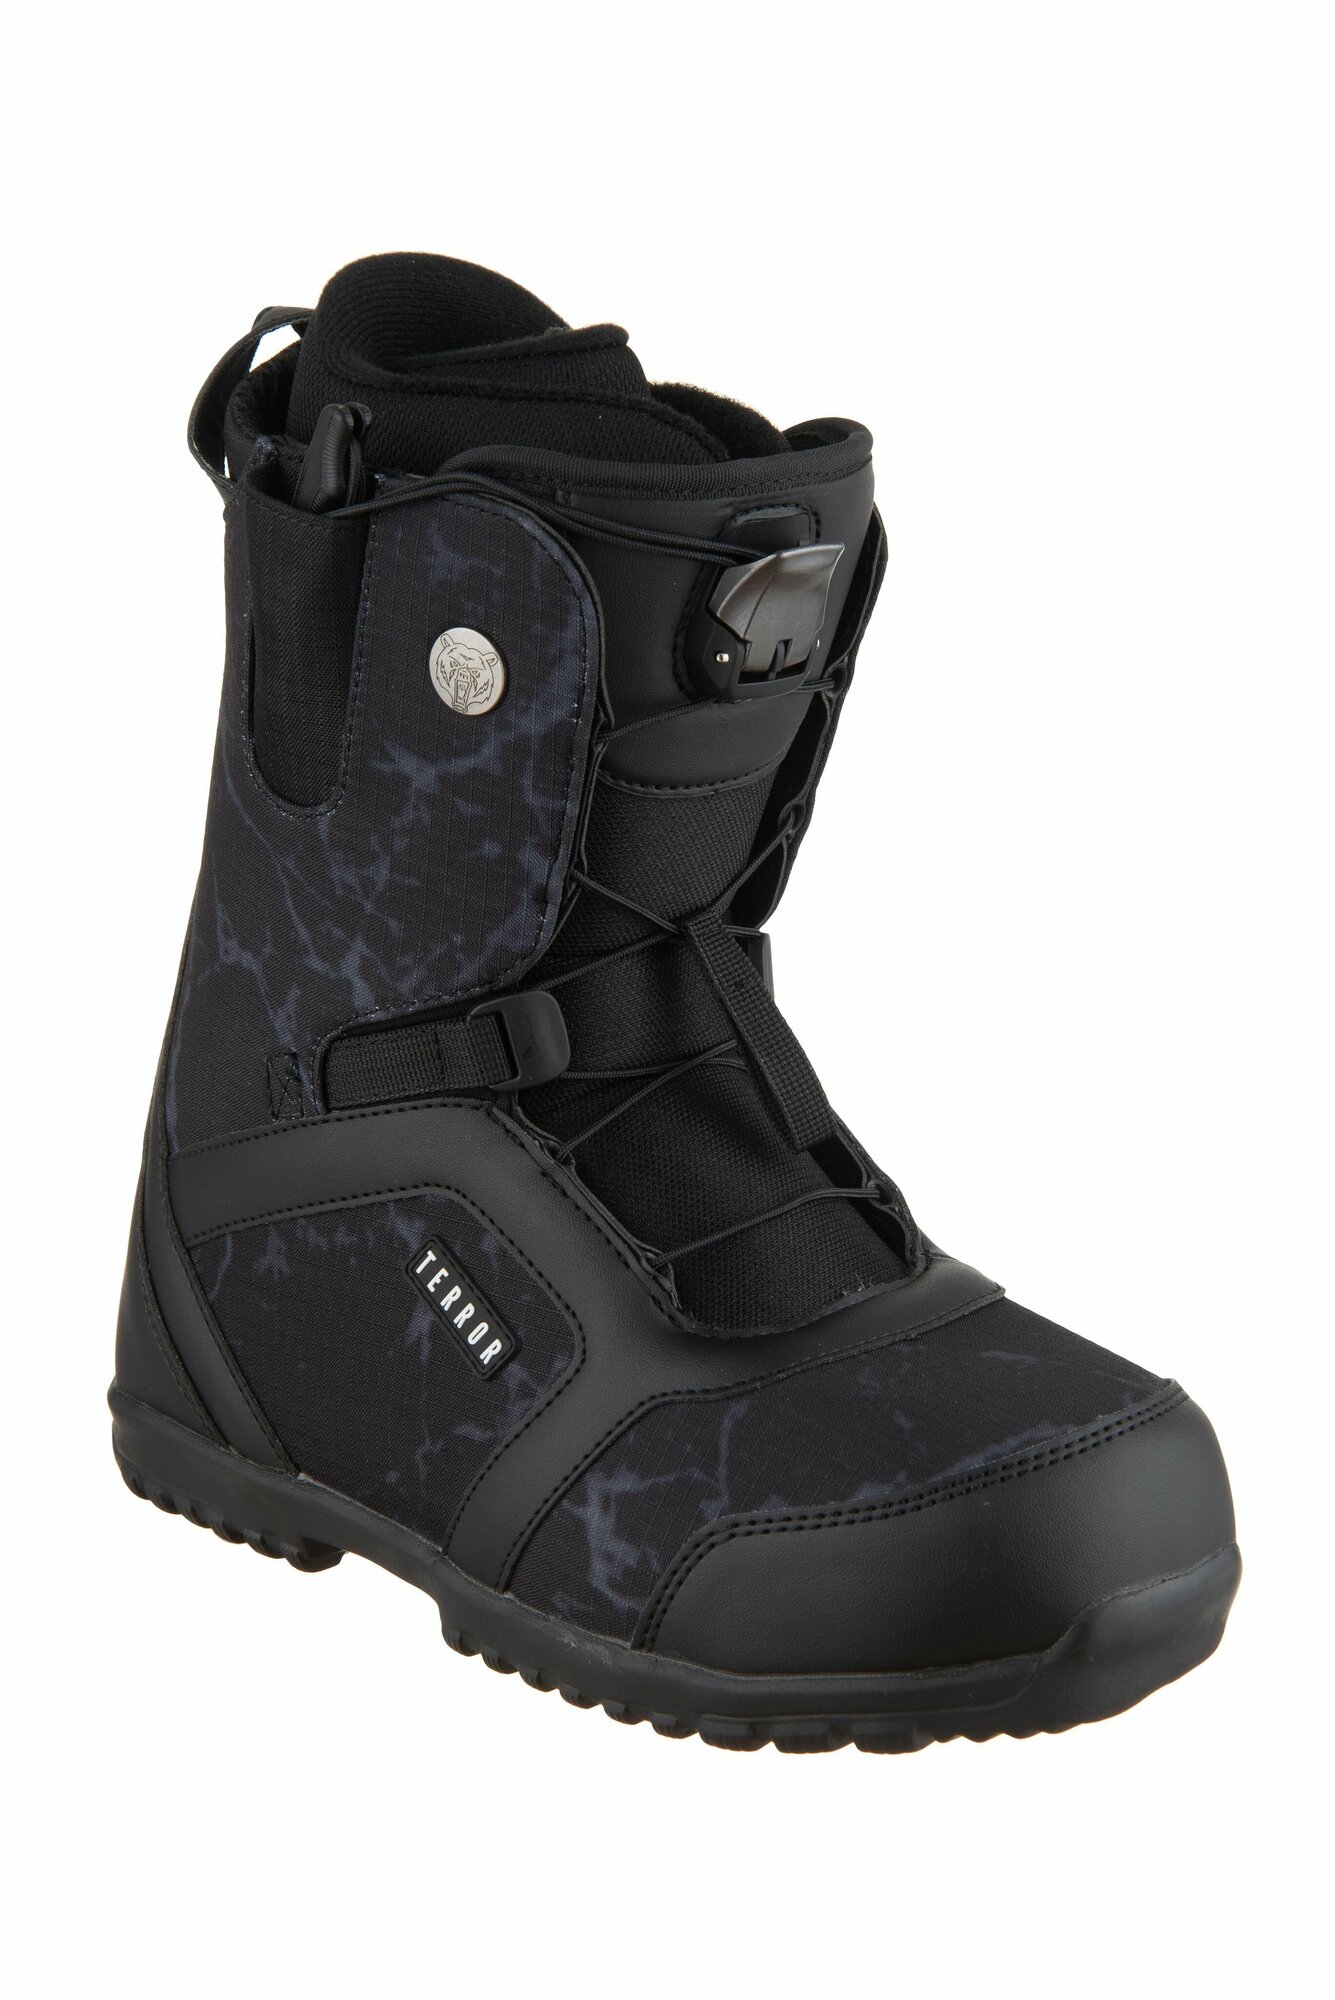 Ботинки сноубордические TERROR CREW Fastec Black (42 RU / 28 cm)